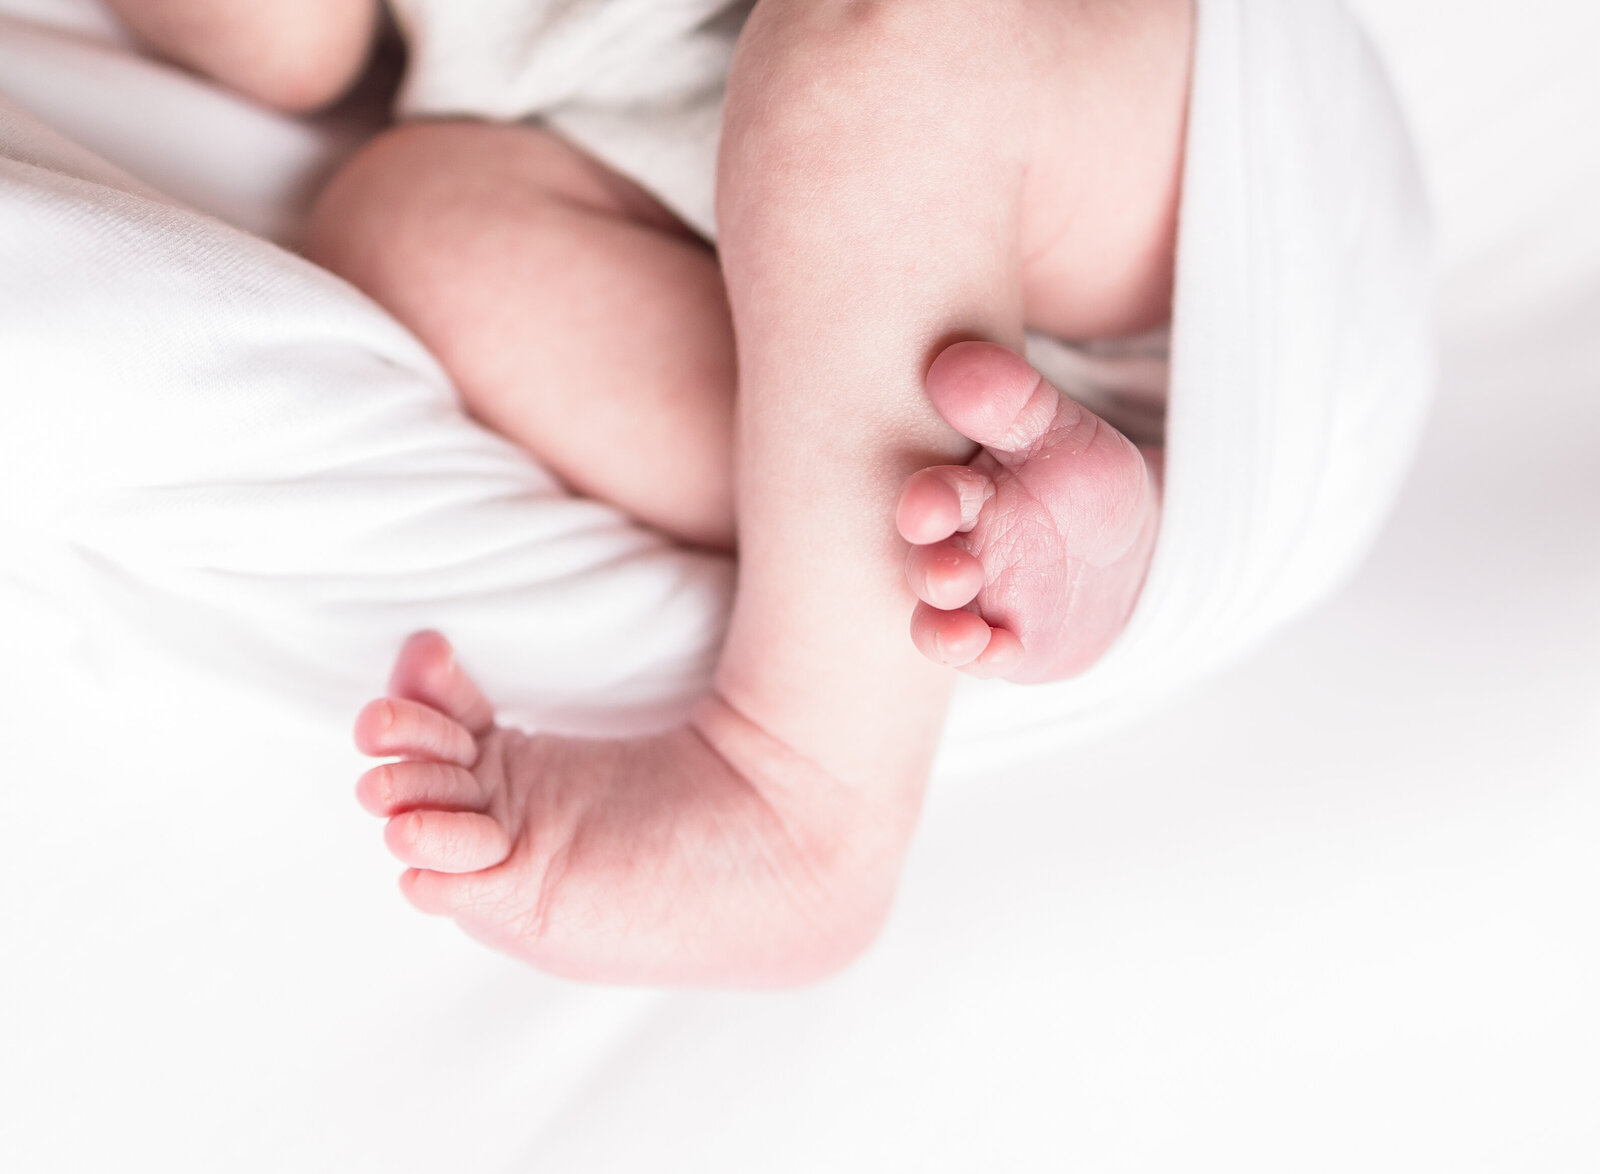 newborn baby detail photo of toes